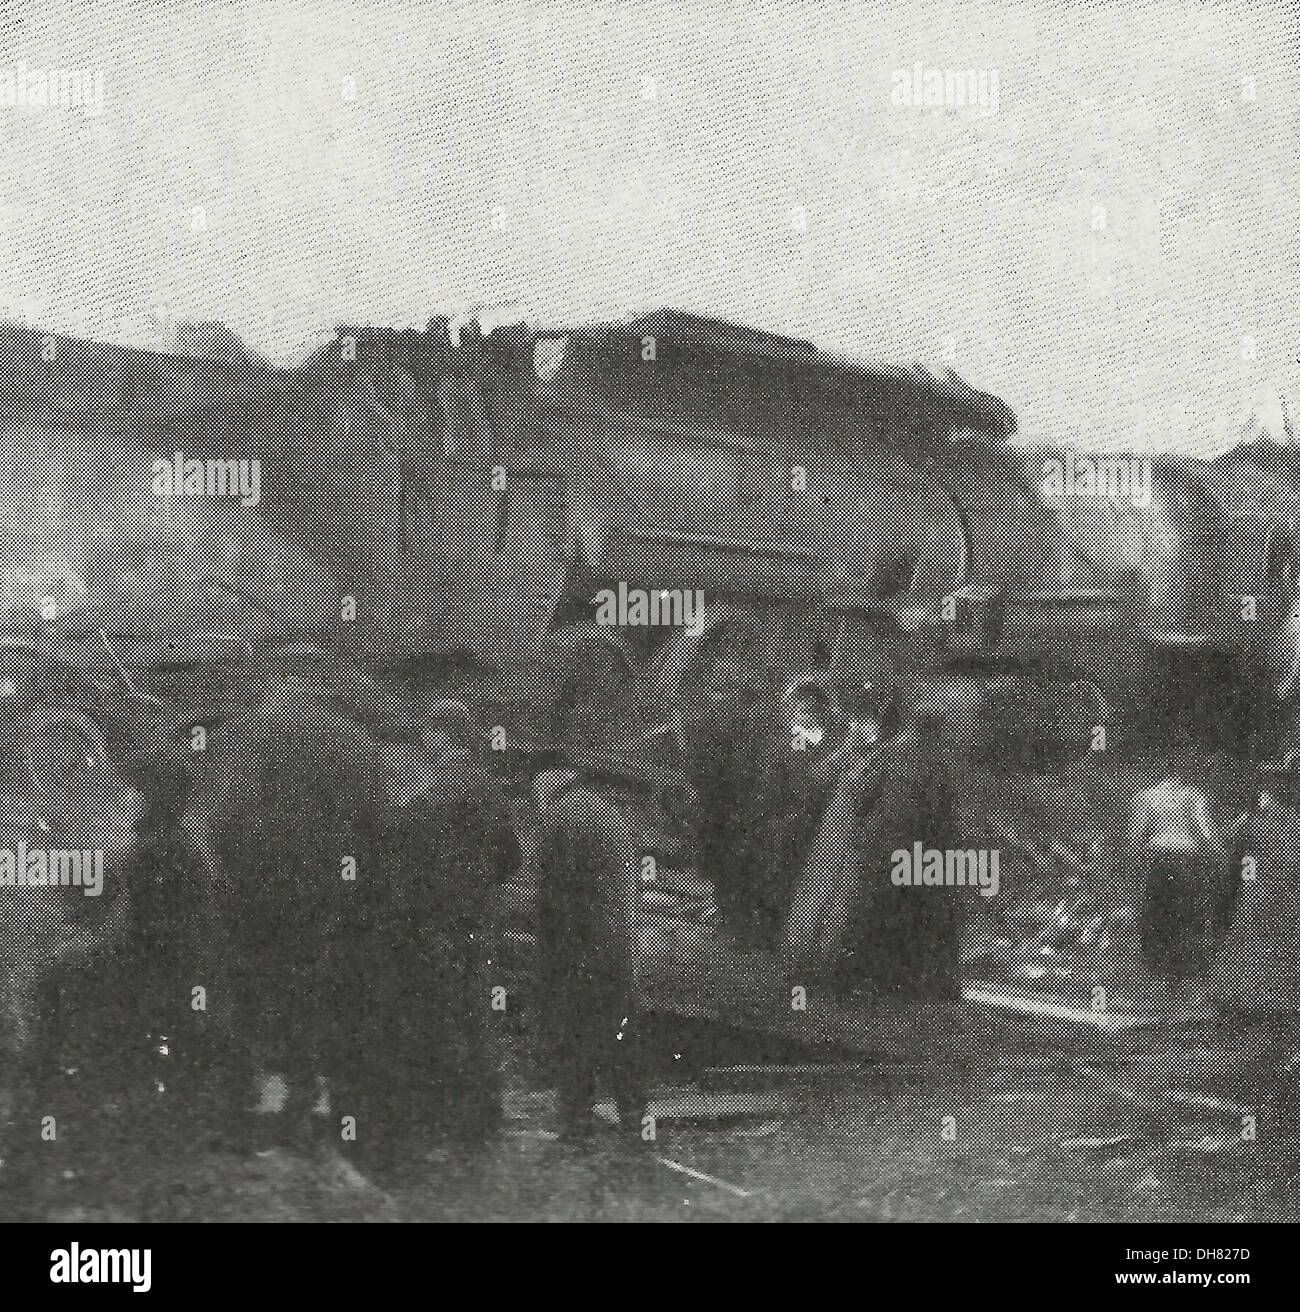 Questi locomotori incontrato sulla stessa traccia - La Regina City Offerte su quattro grandi corse sulla testa in una catena di trasporto merci nei pressi di Growler, Indiana su gennaio 19, 1907 - Venti persone sono state uccise Foto Stock